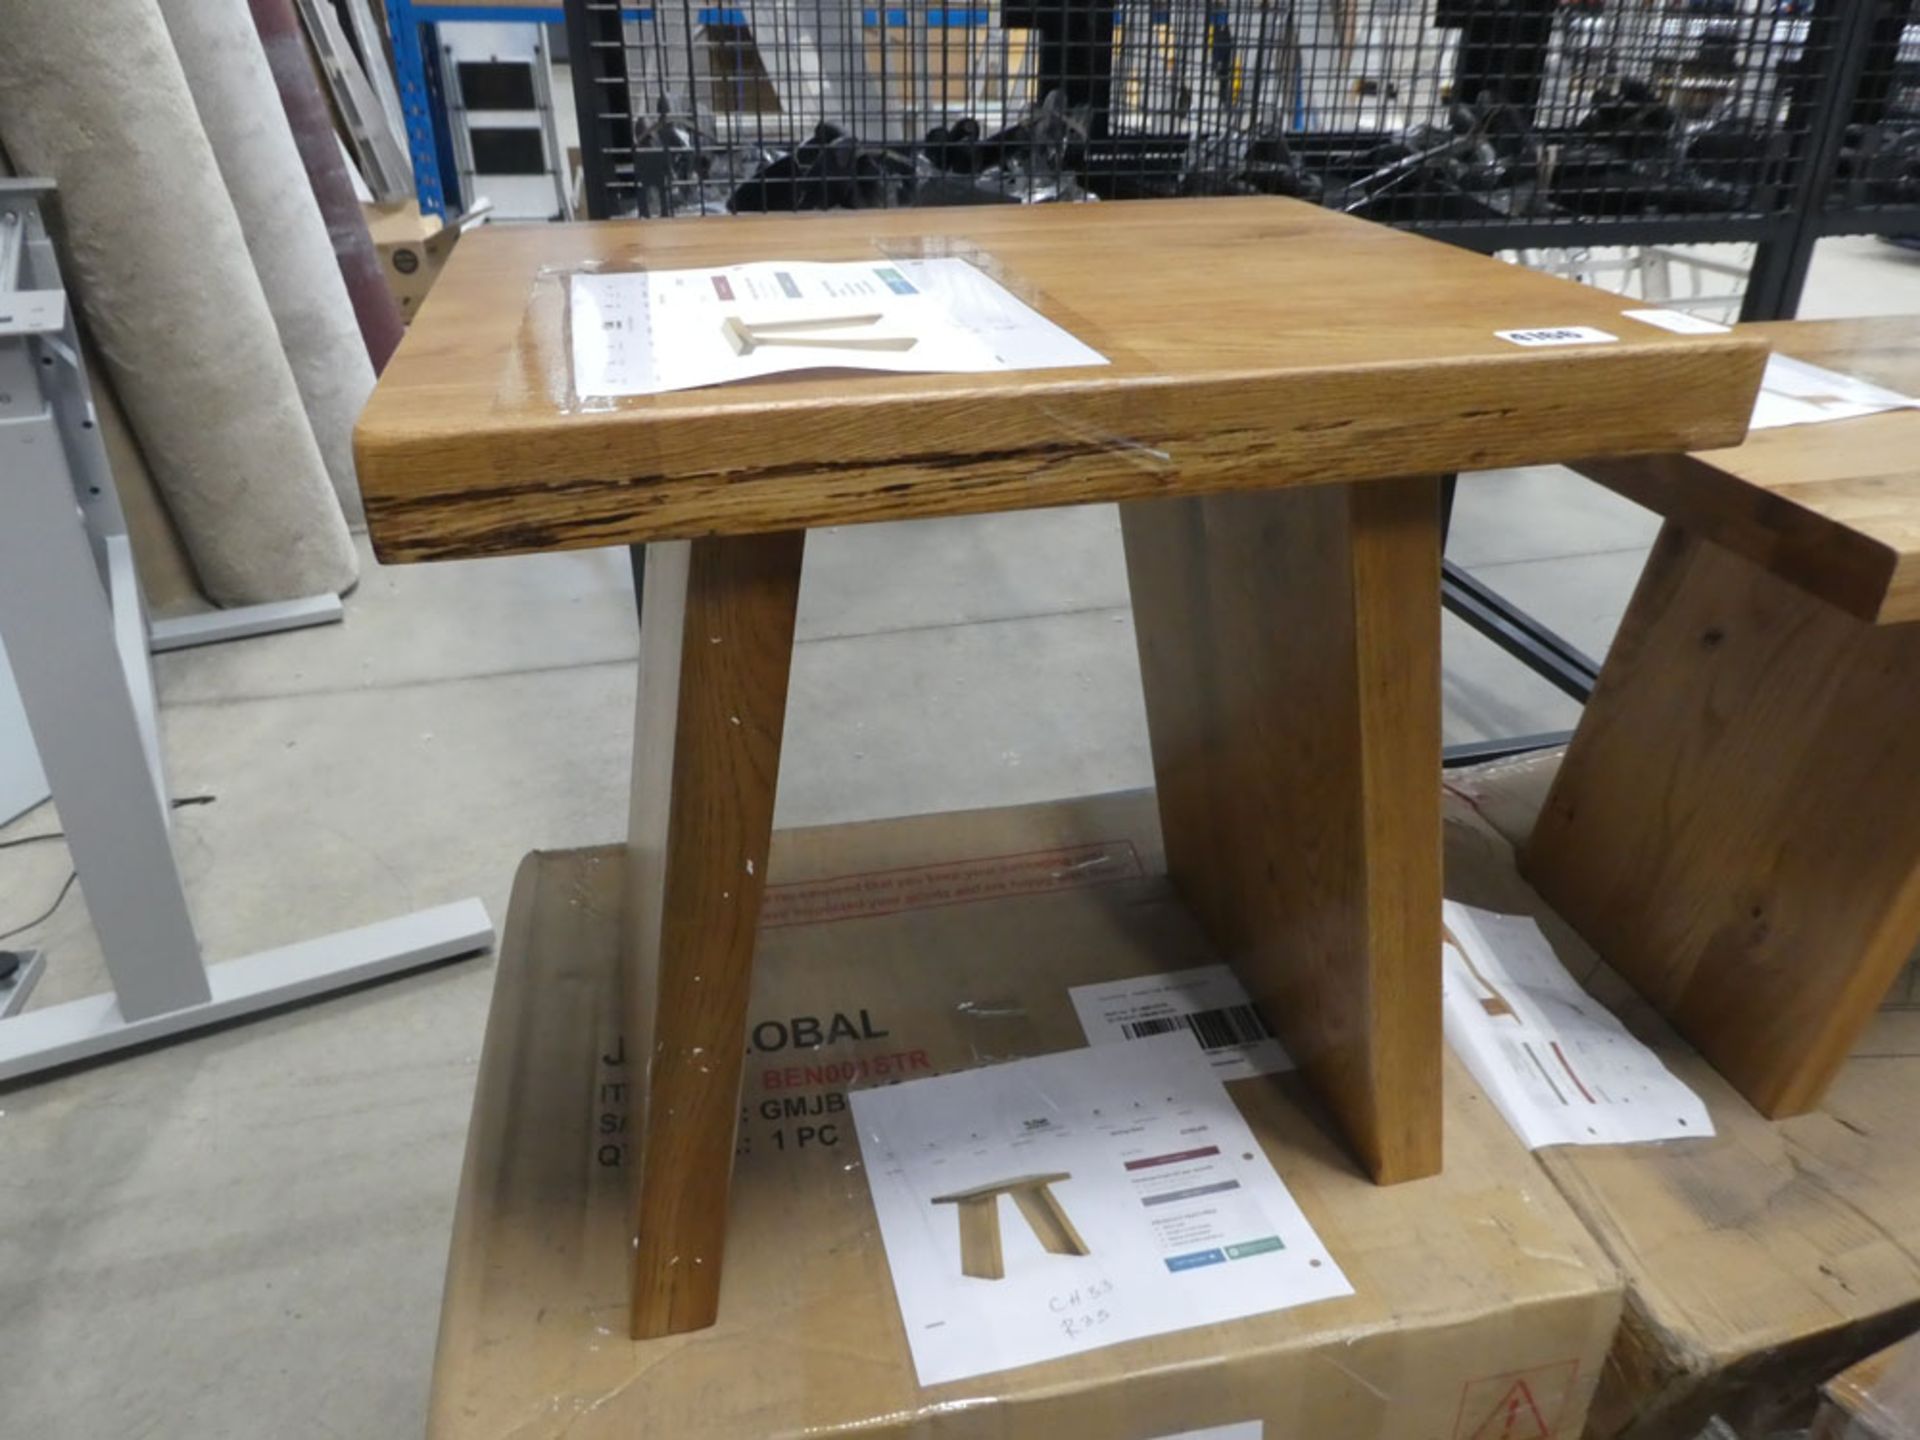 Boxed flatpack oak FurnitureLand solid wooden stool